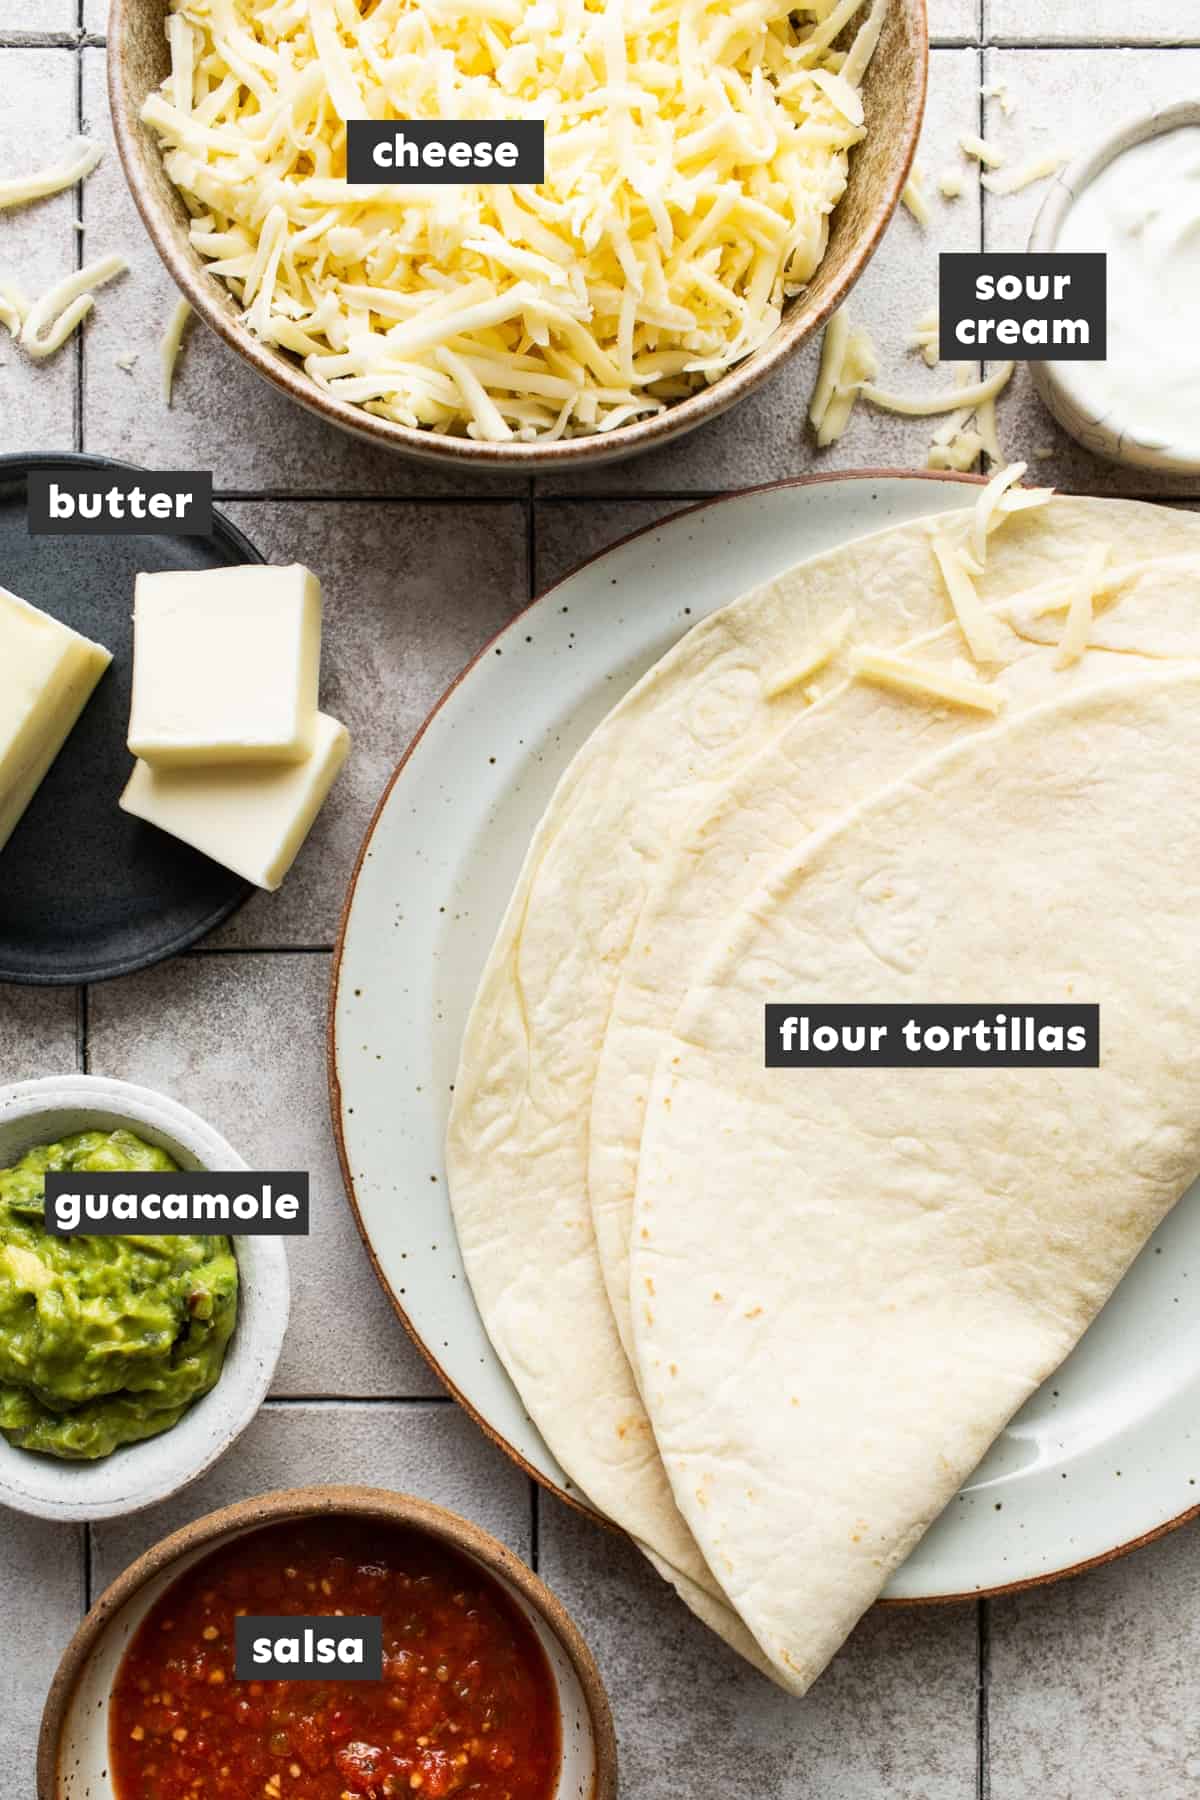 Ingredients in cheese quesadillas